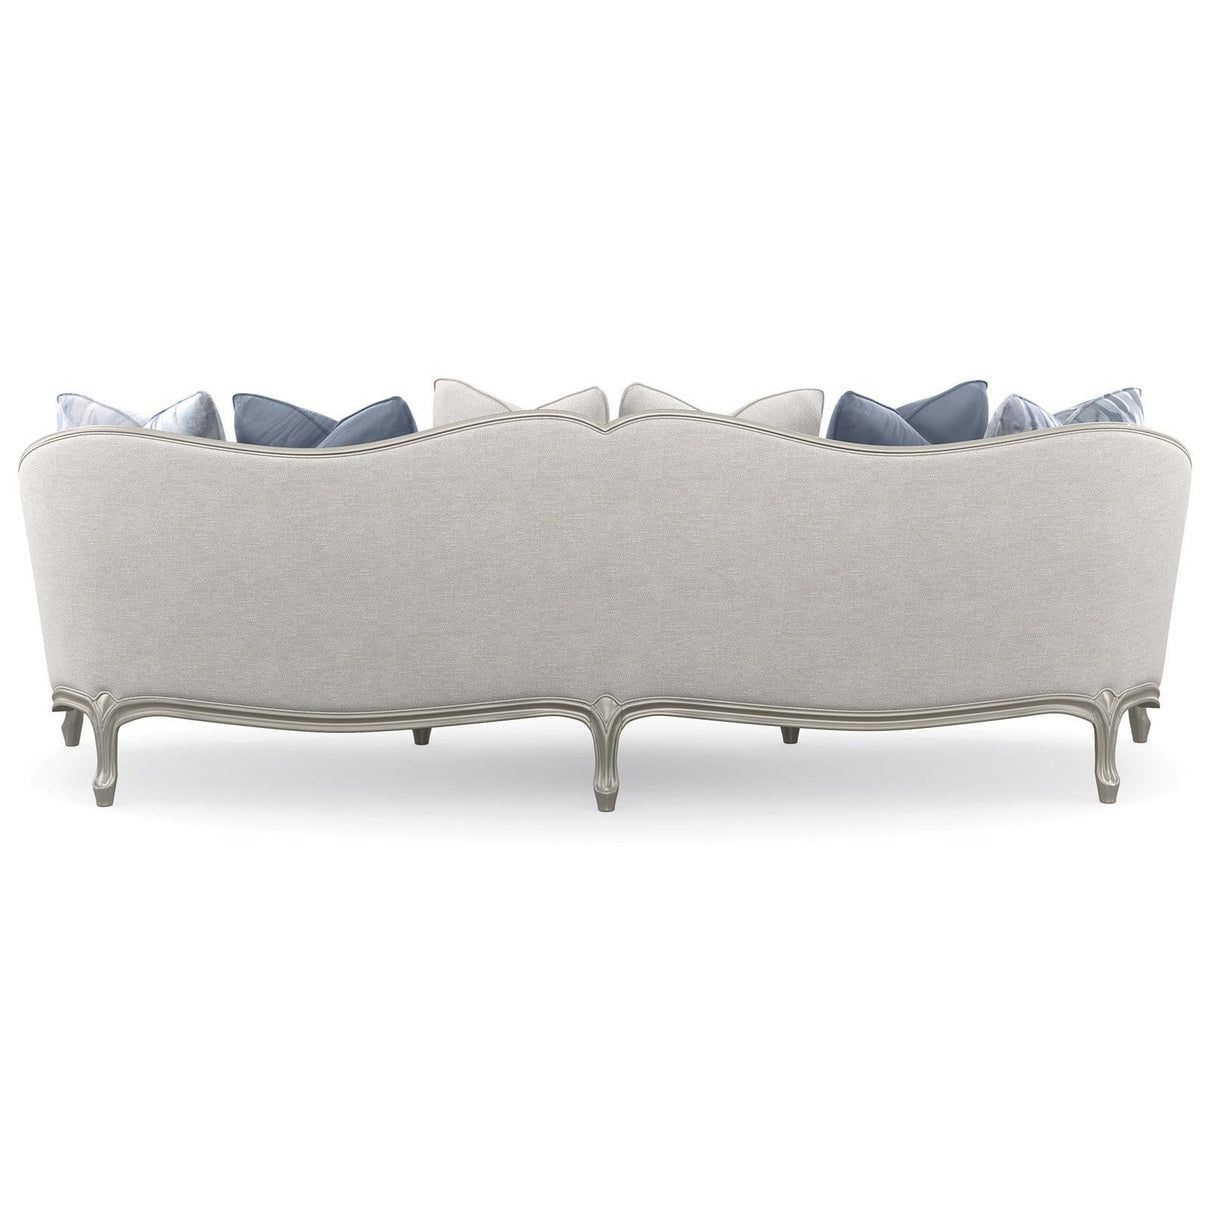 Caracole Special Invitation Sofa Furniture caracole-UPH-020-111-A